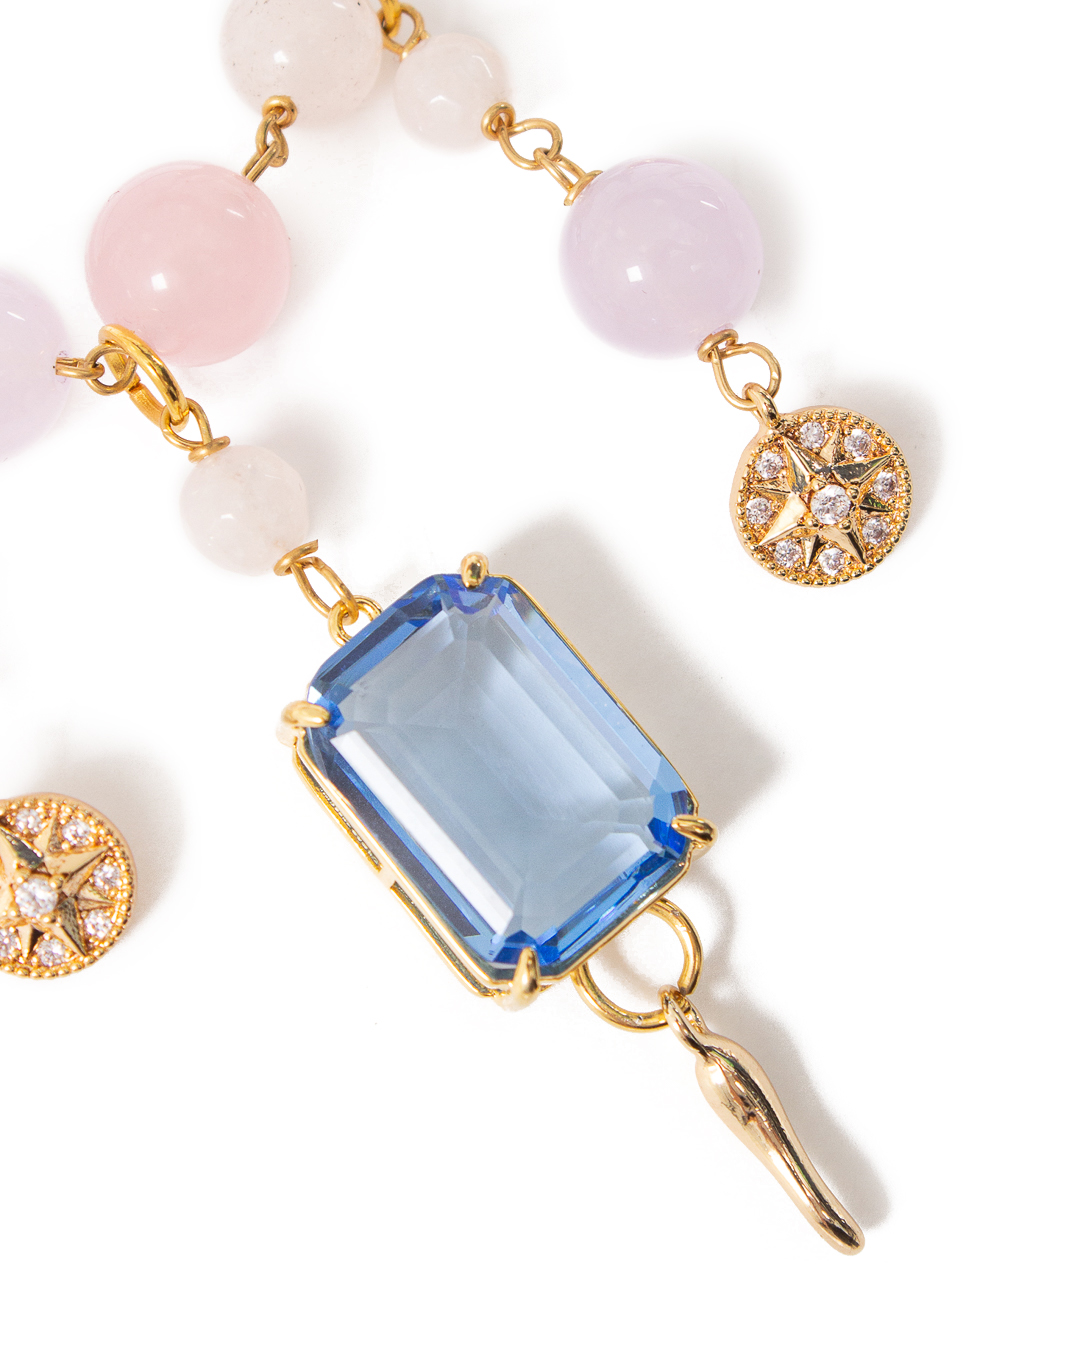 ожерелье Marina Fossati ILLYPILLI CORTA6 золотой+розовый+голубой UNI, размер UNI, цвет золотой+розовый+голубой ILLYPILLI CORTA6 золотой+розовый+голубой UNI - фото 2